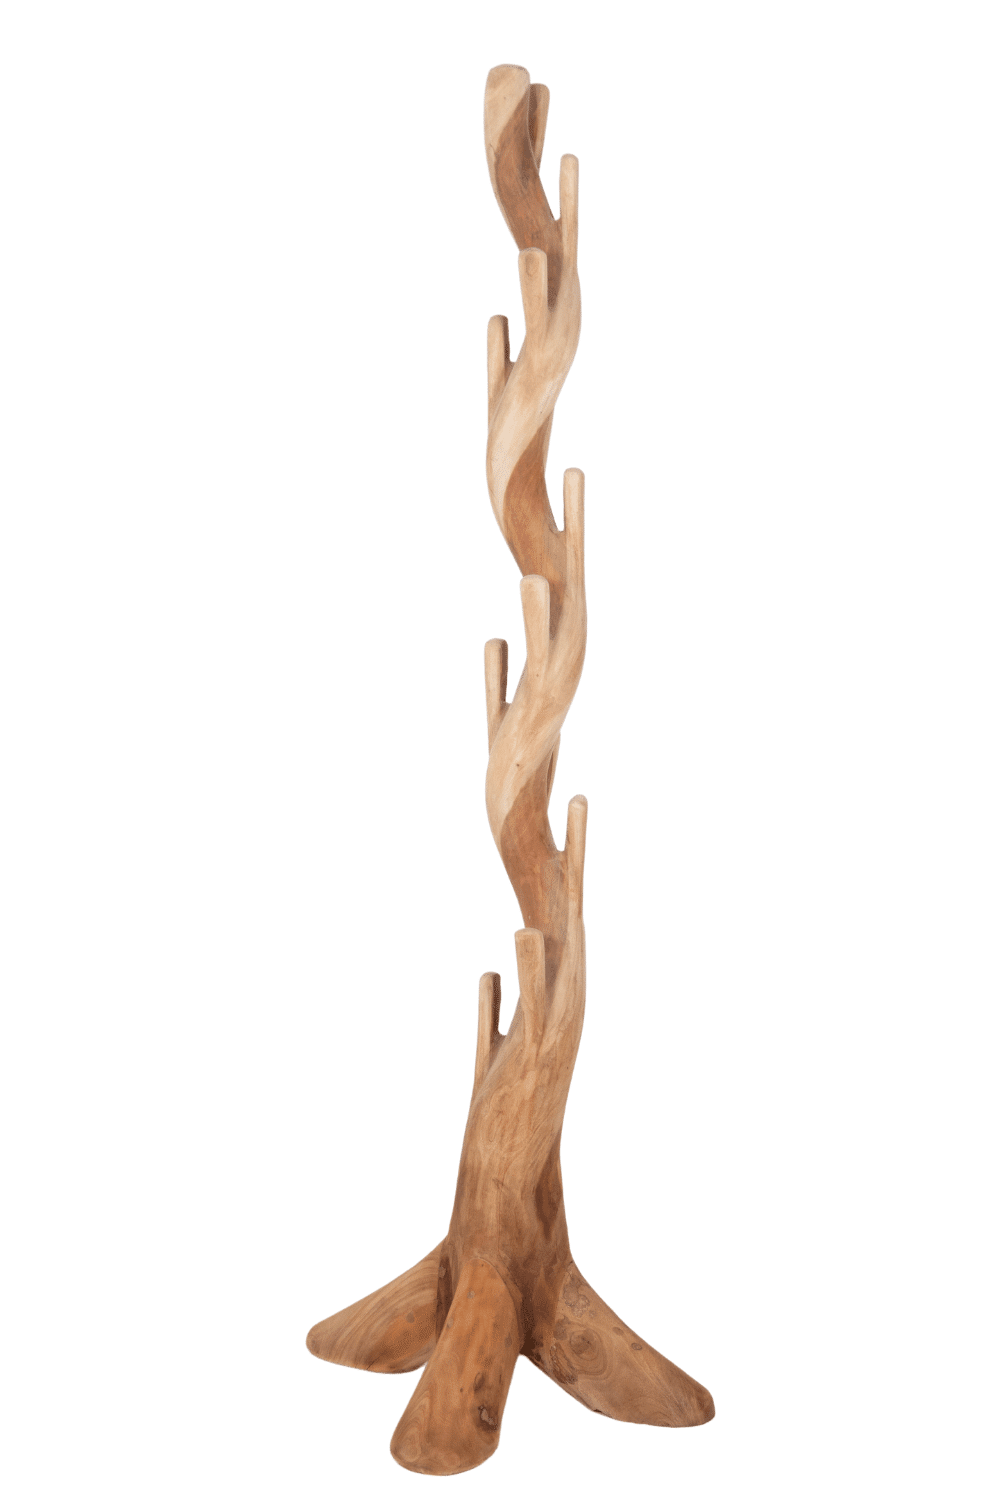 speelse staande kapstok van hout